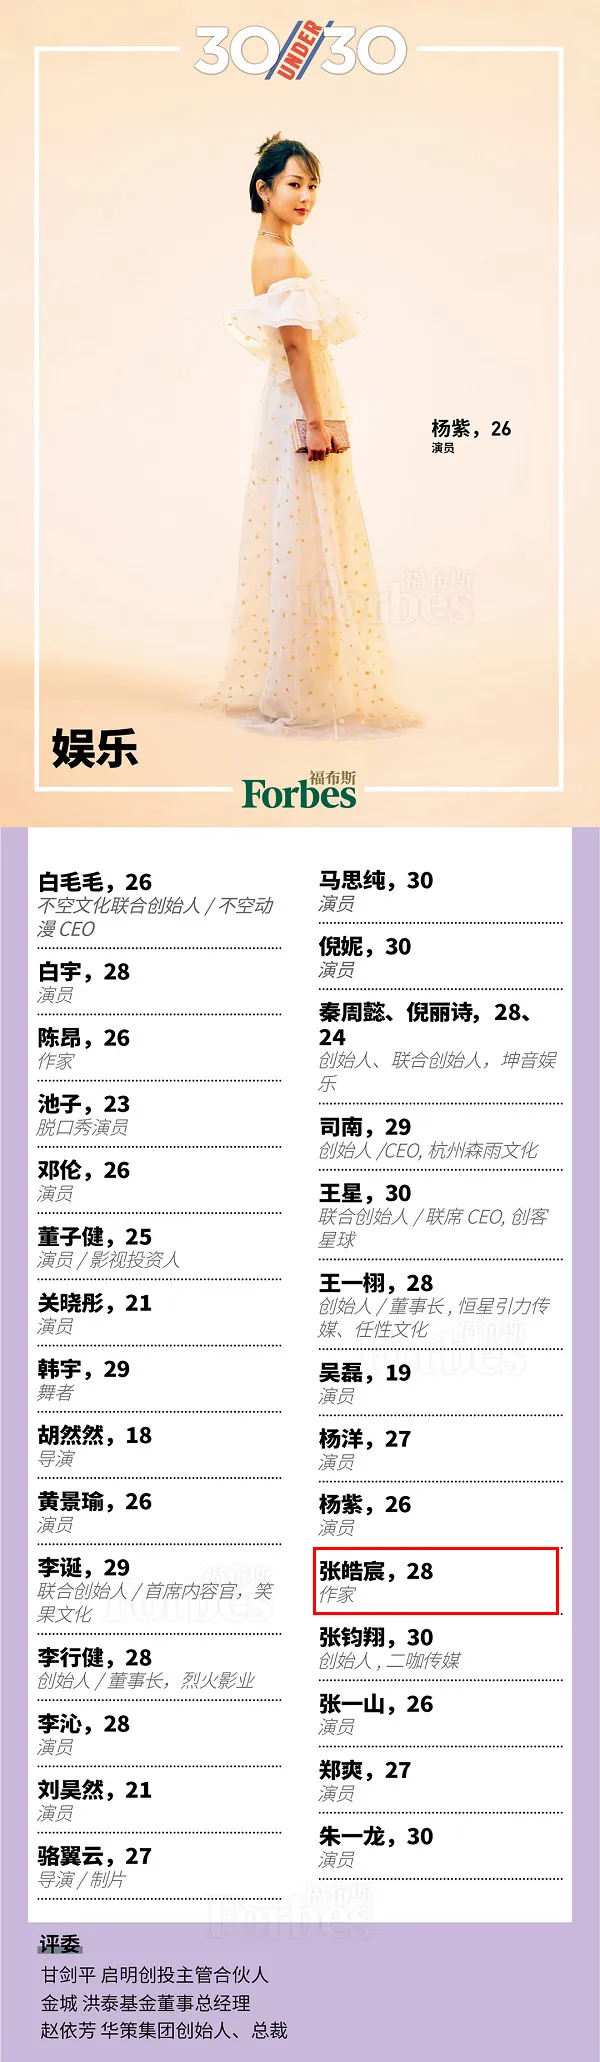 福布斯中國2018年30位30歲以下精英榜